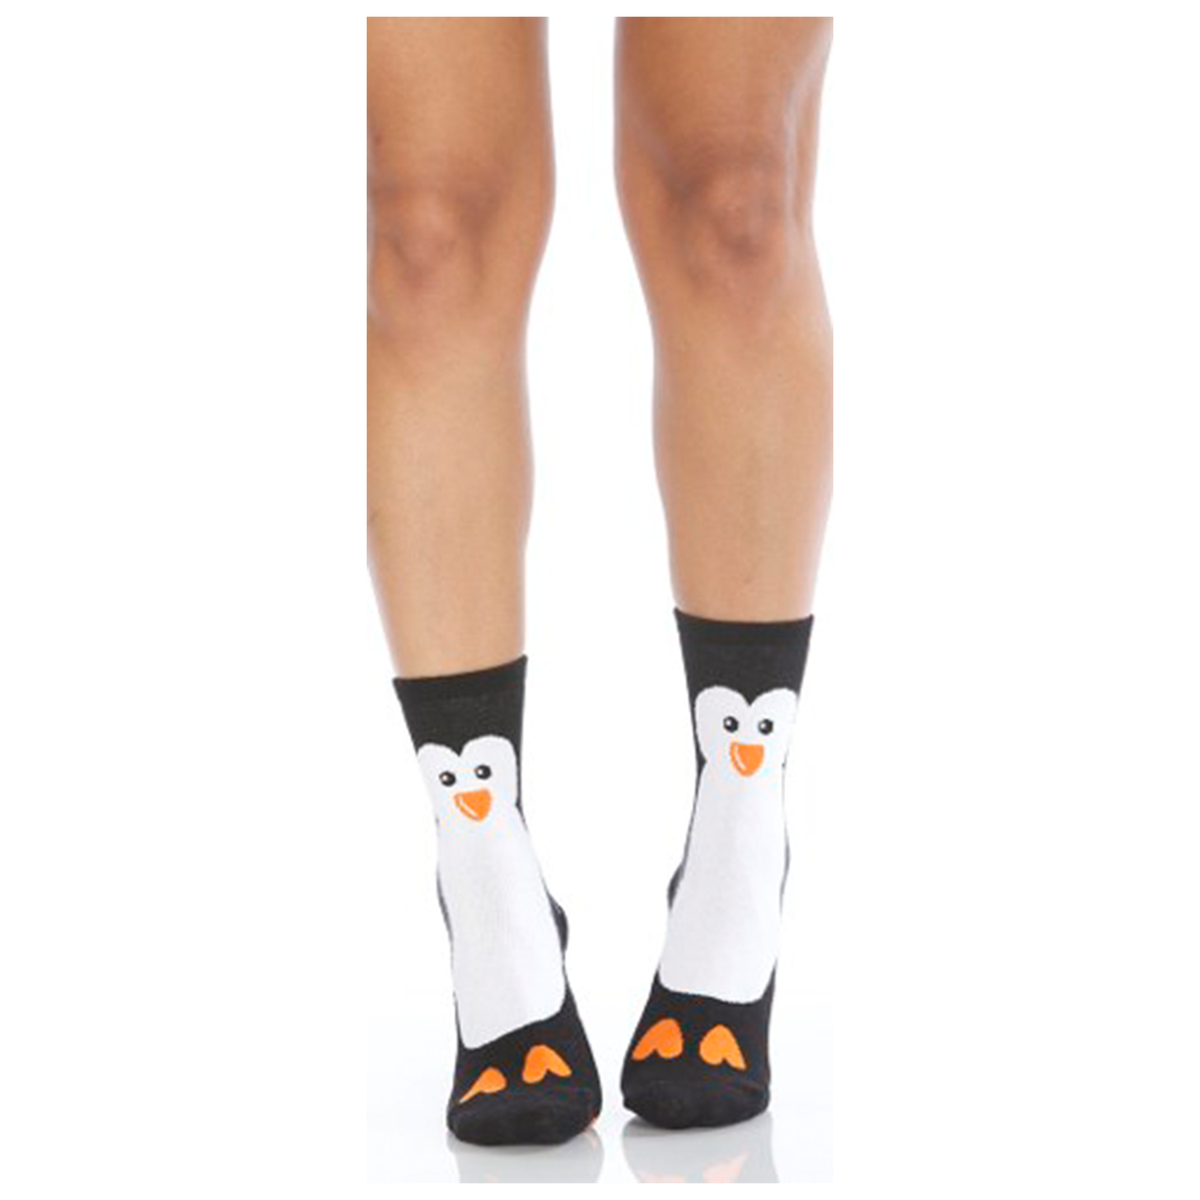 Socks: Tall Penguin design